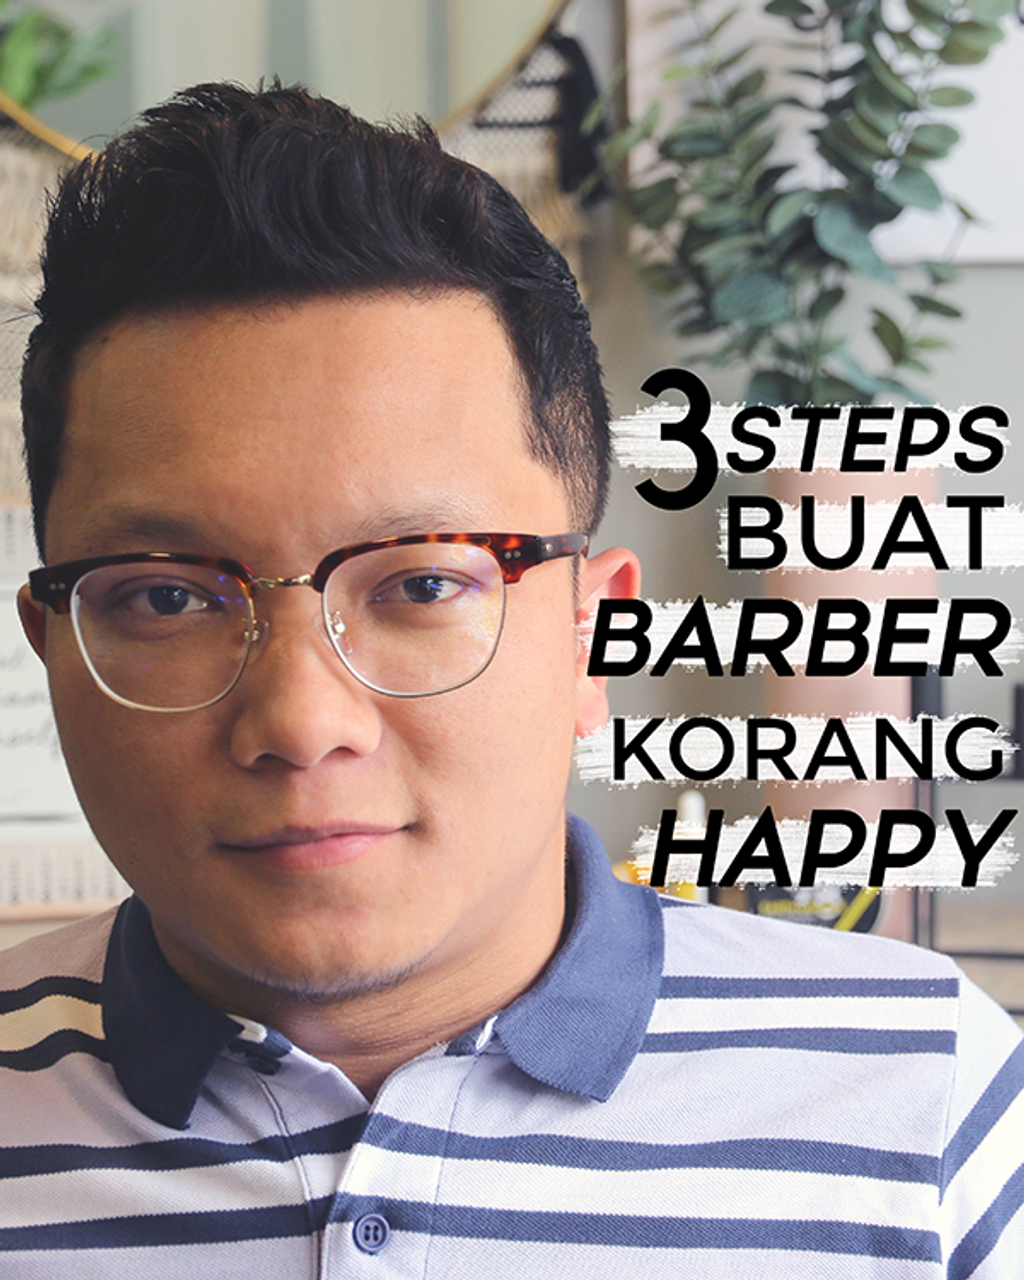 3 STEPS BUAT BARBER KORANG HAPPY